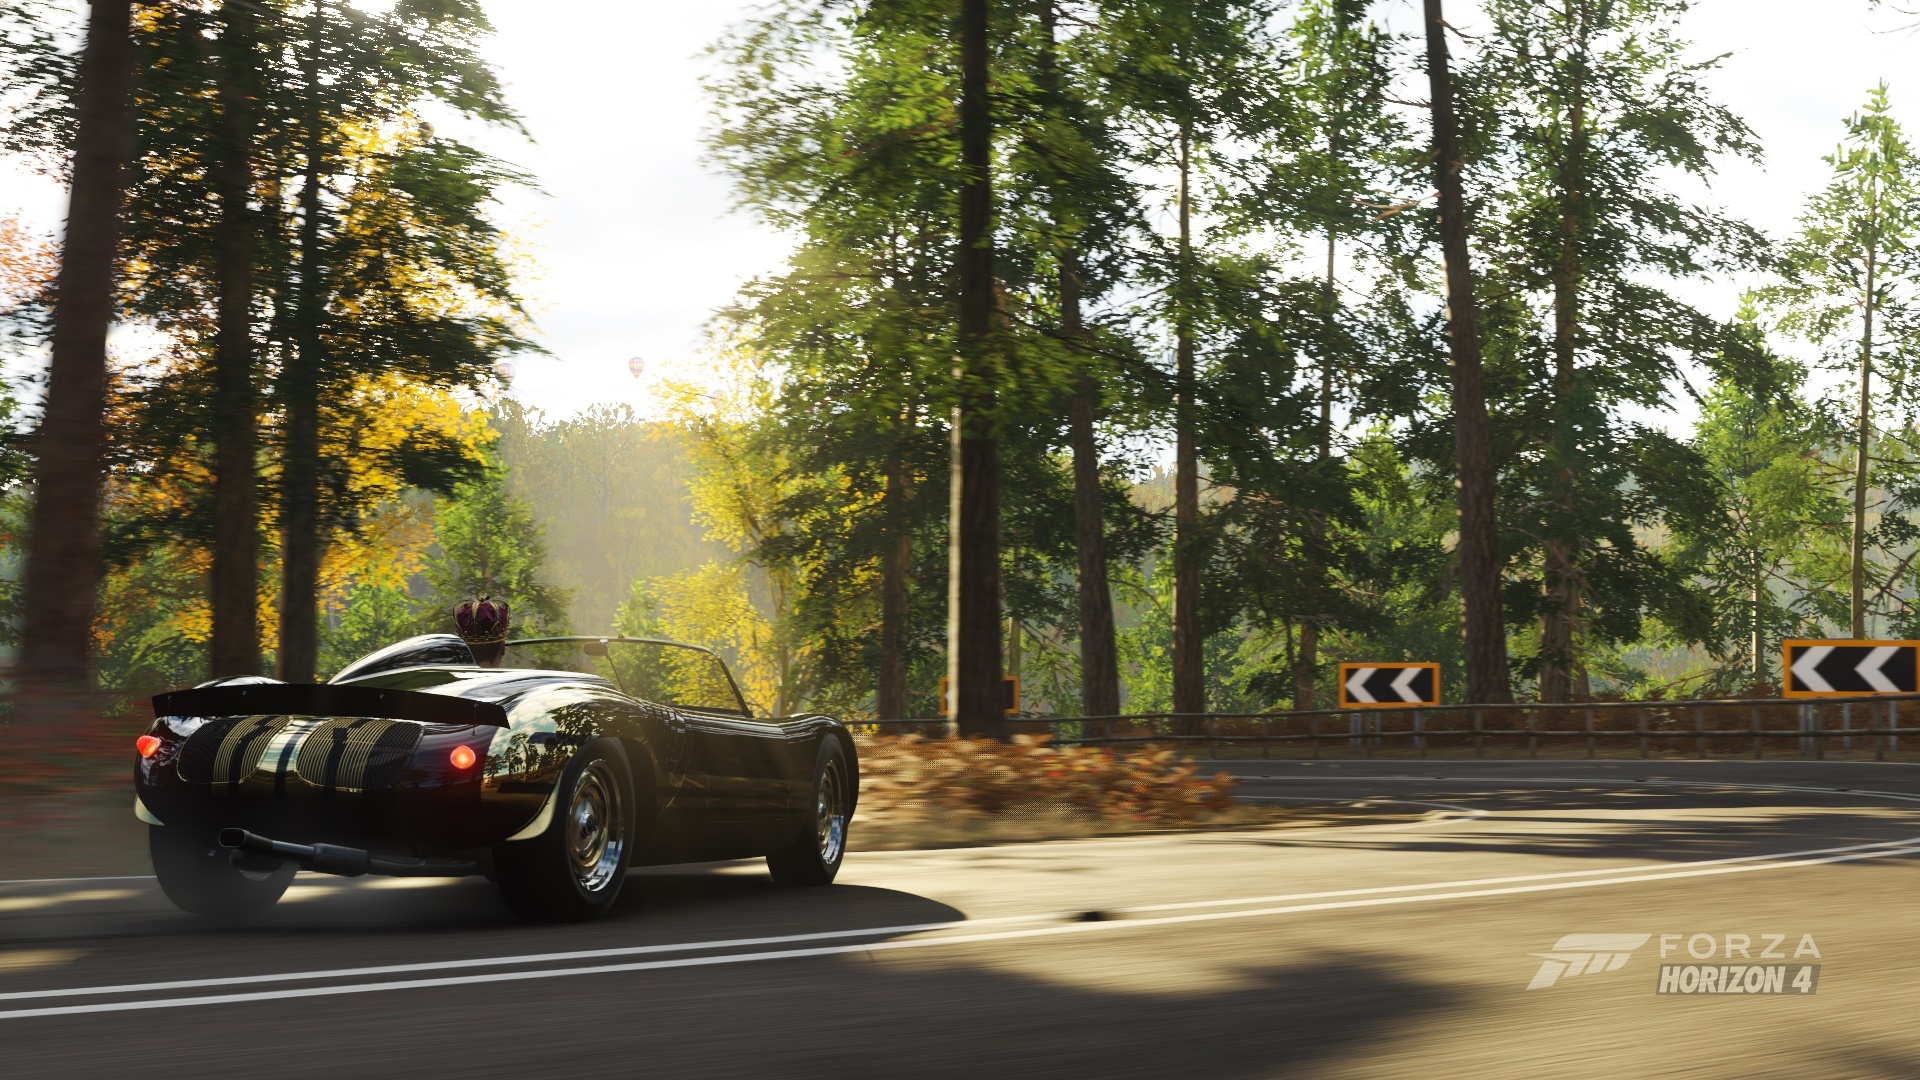 Forza Horizon 4 free pic